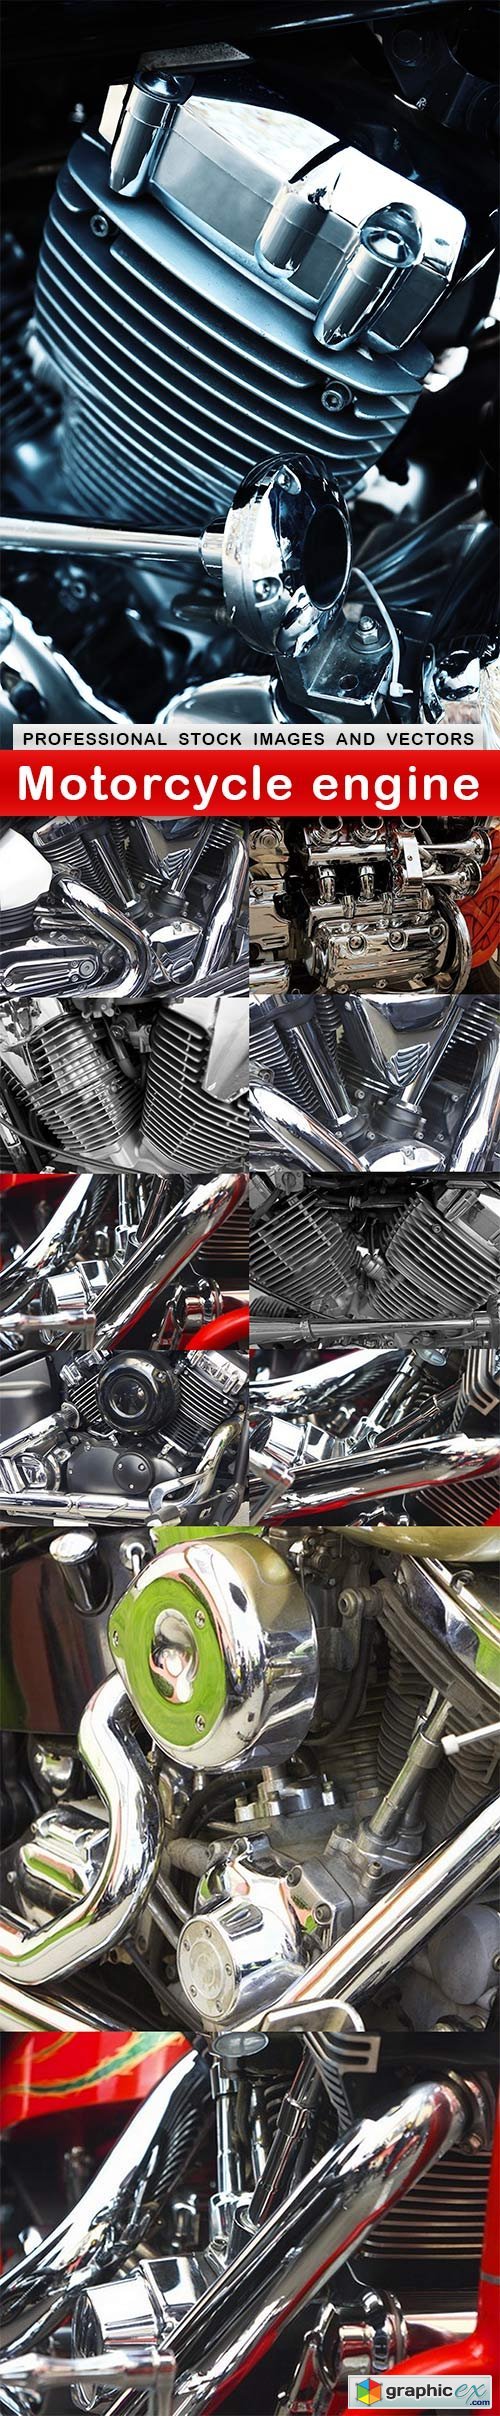 Motorcycle engine - 11 UHQ JPEG